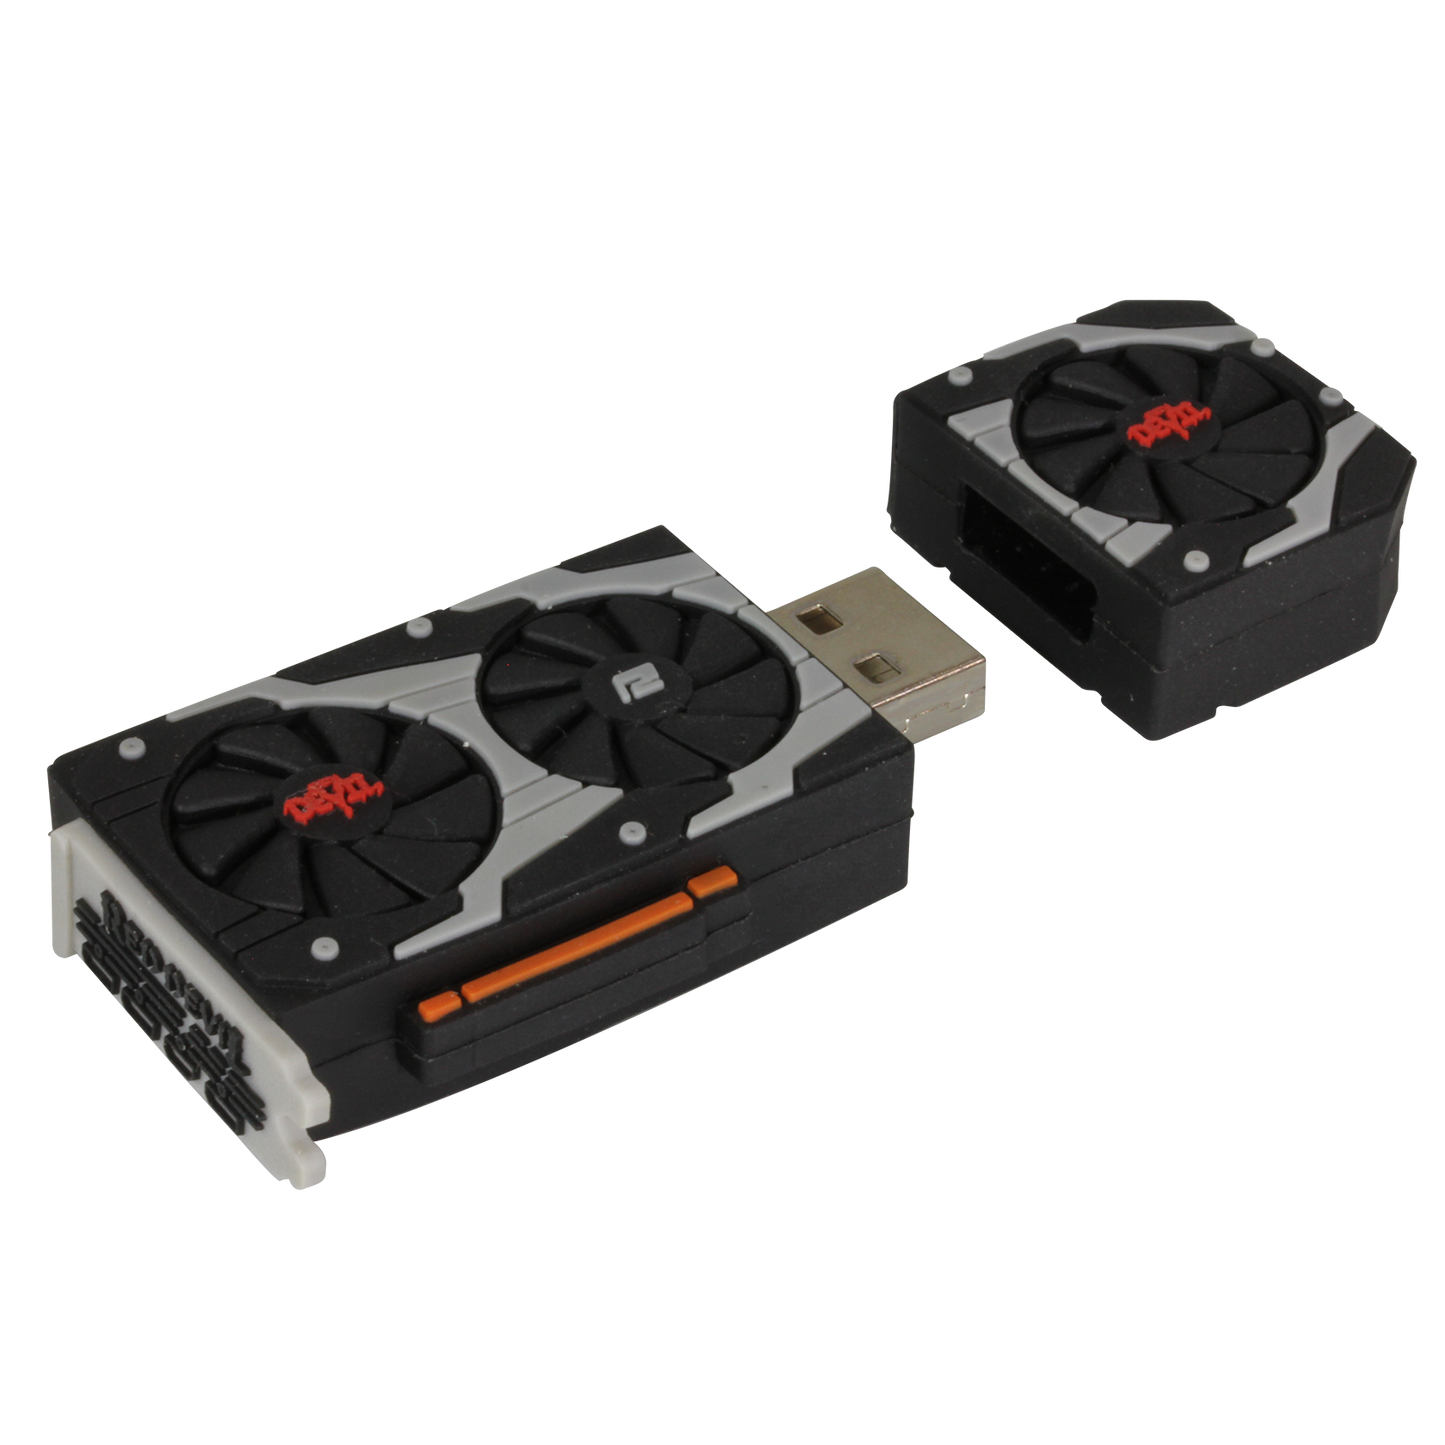 Red Devil RX5700 XT USB Drive